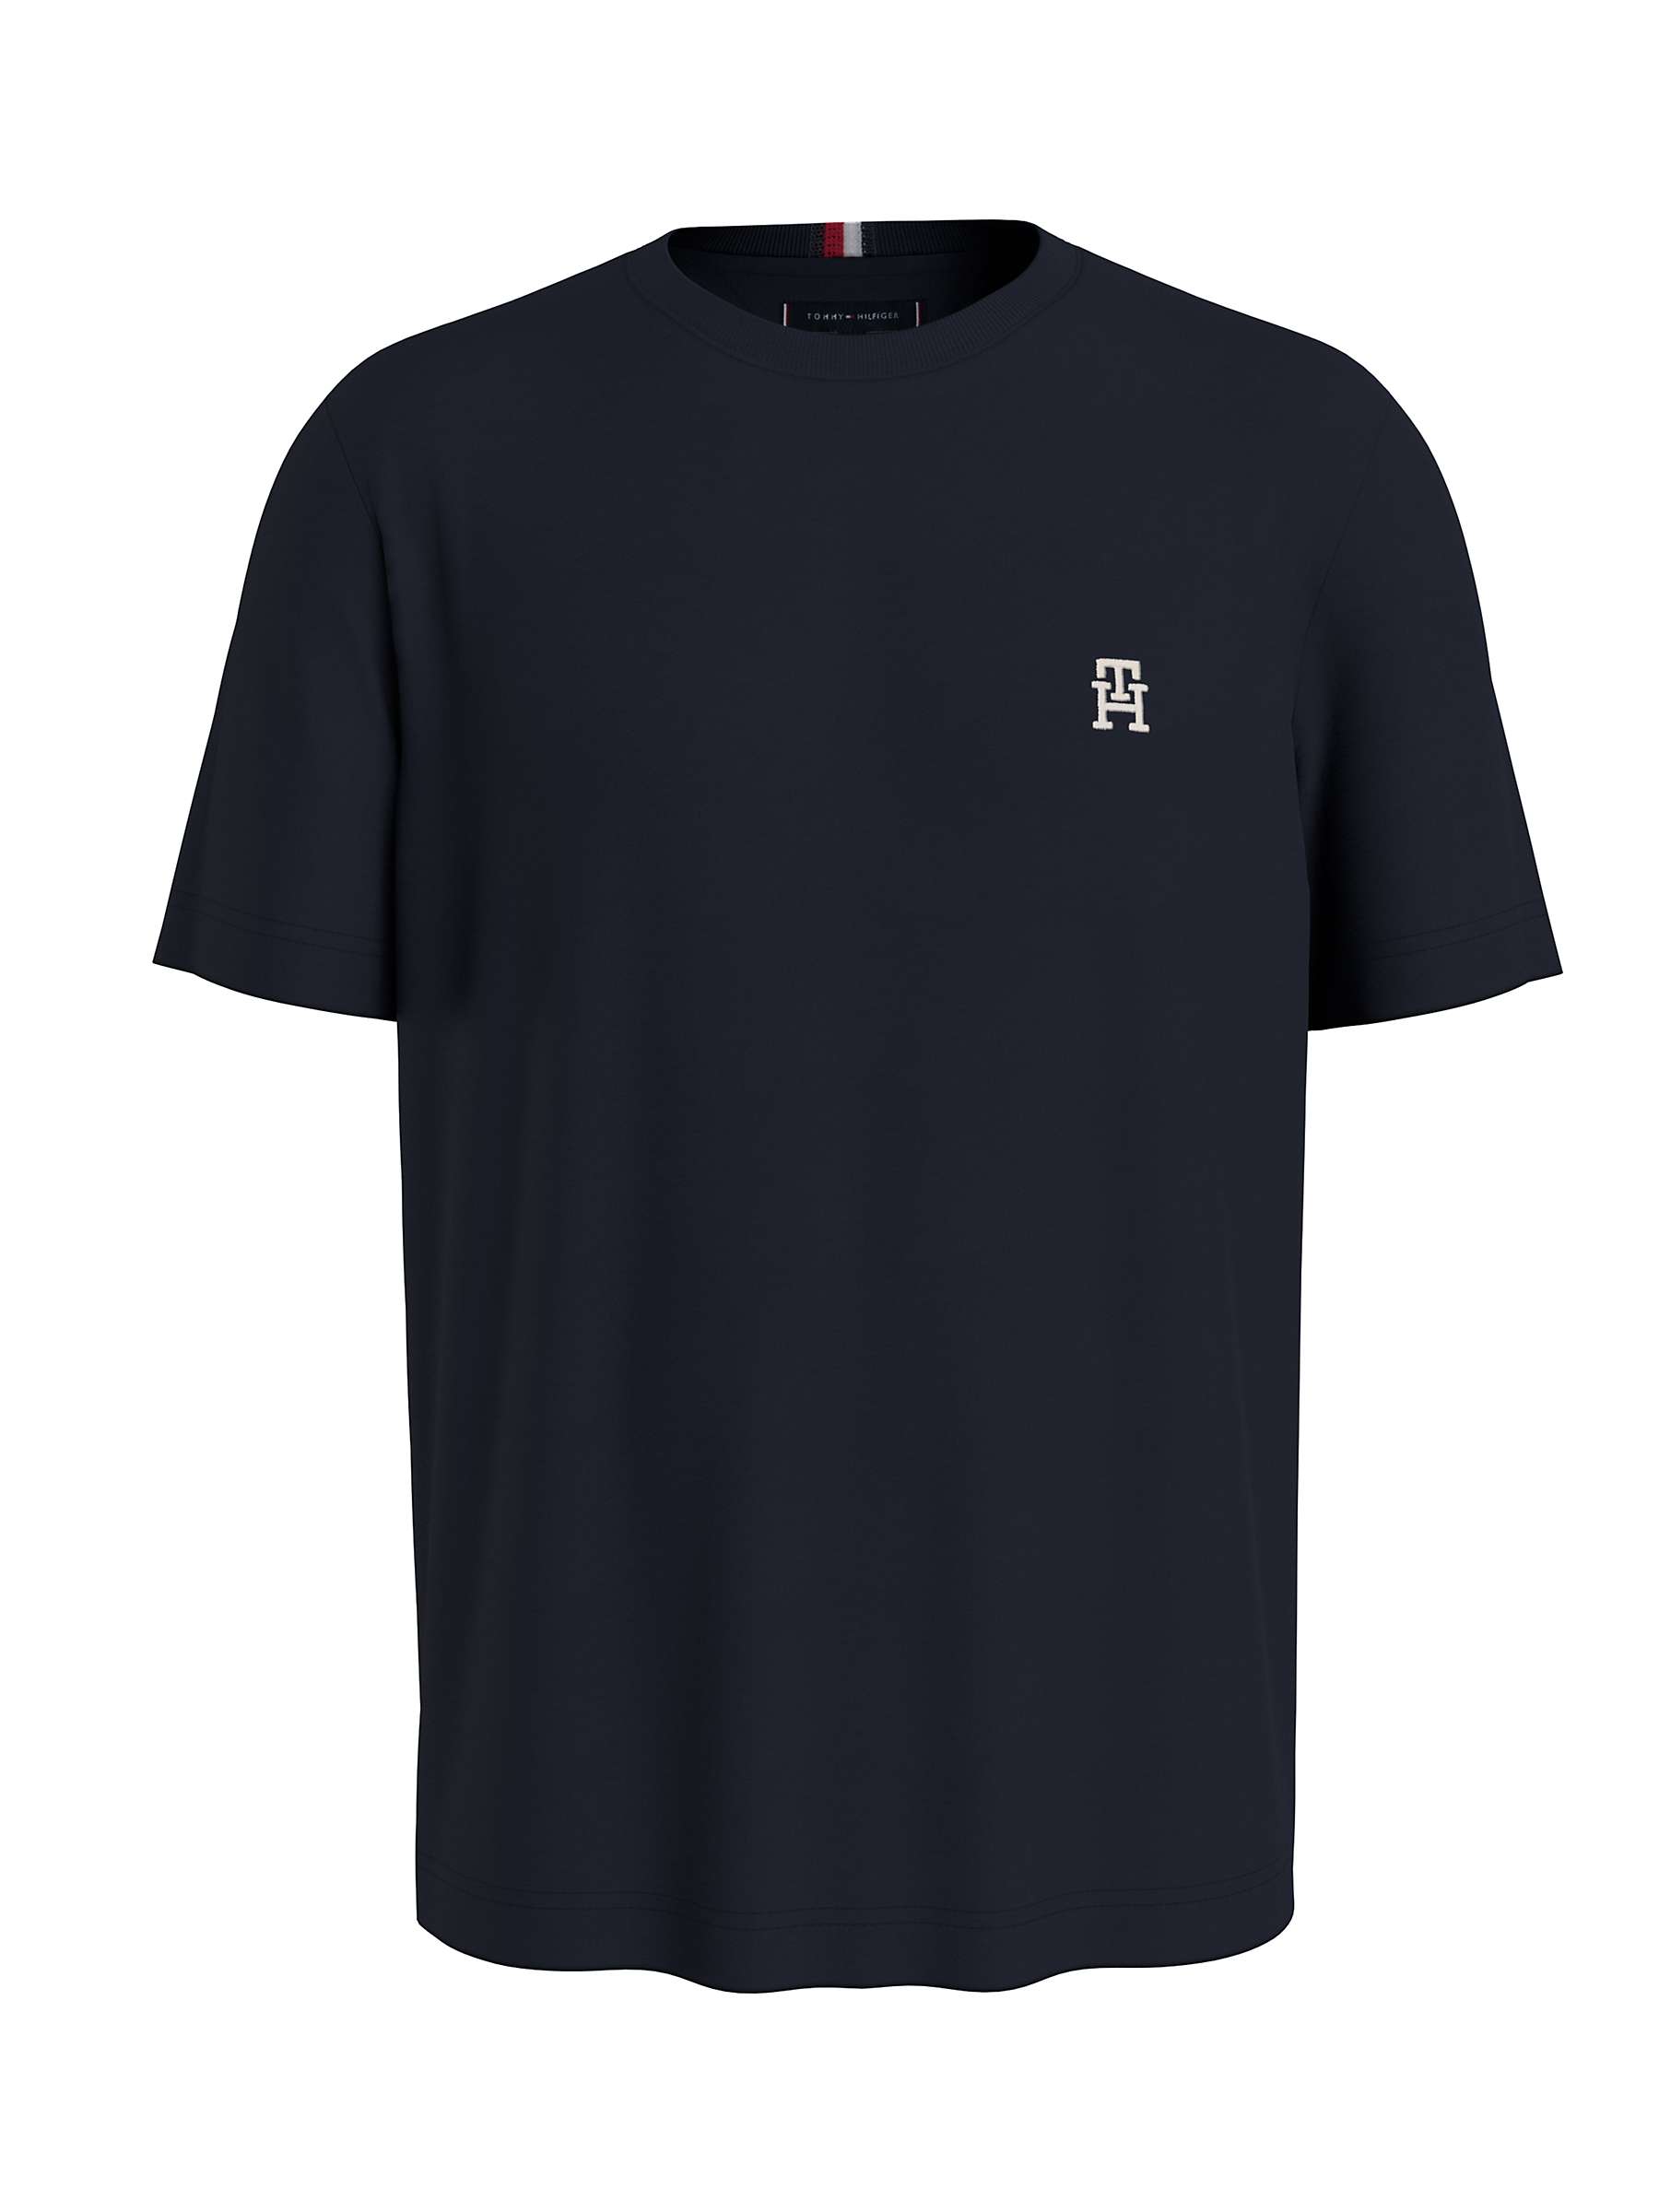 Buy Tommy Hilfiger Monogram T-Shirt, Desert Sky Online at johnlewis.com